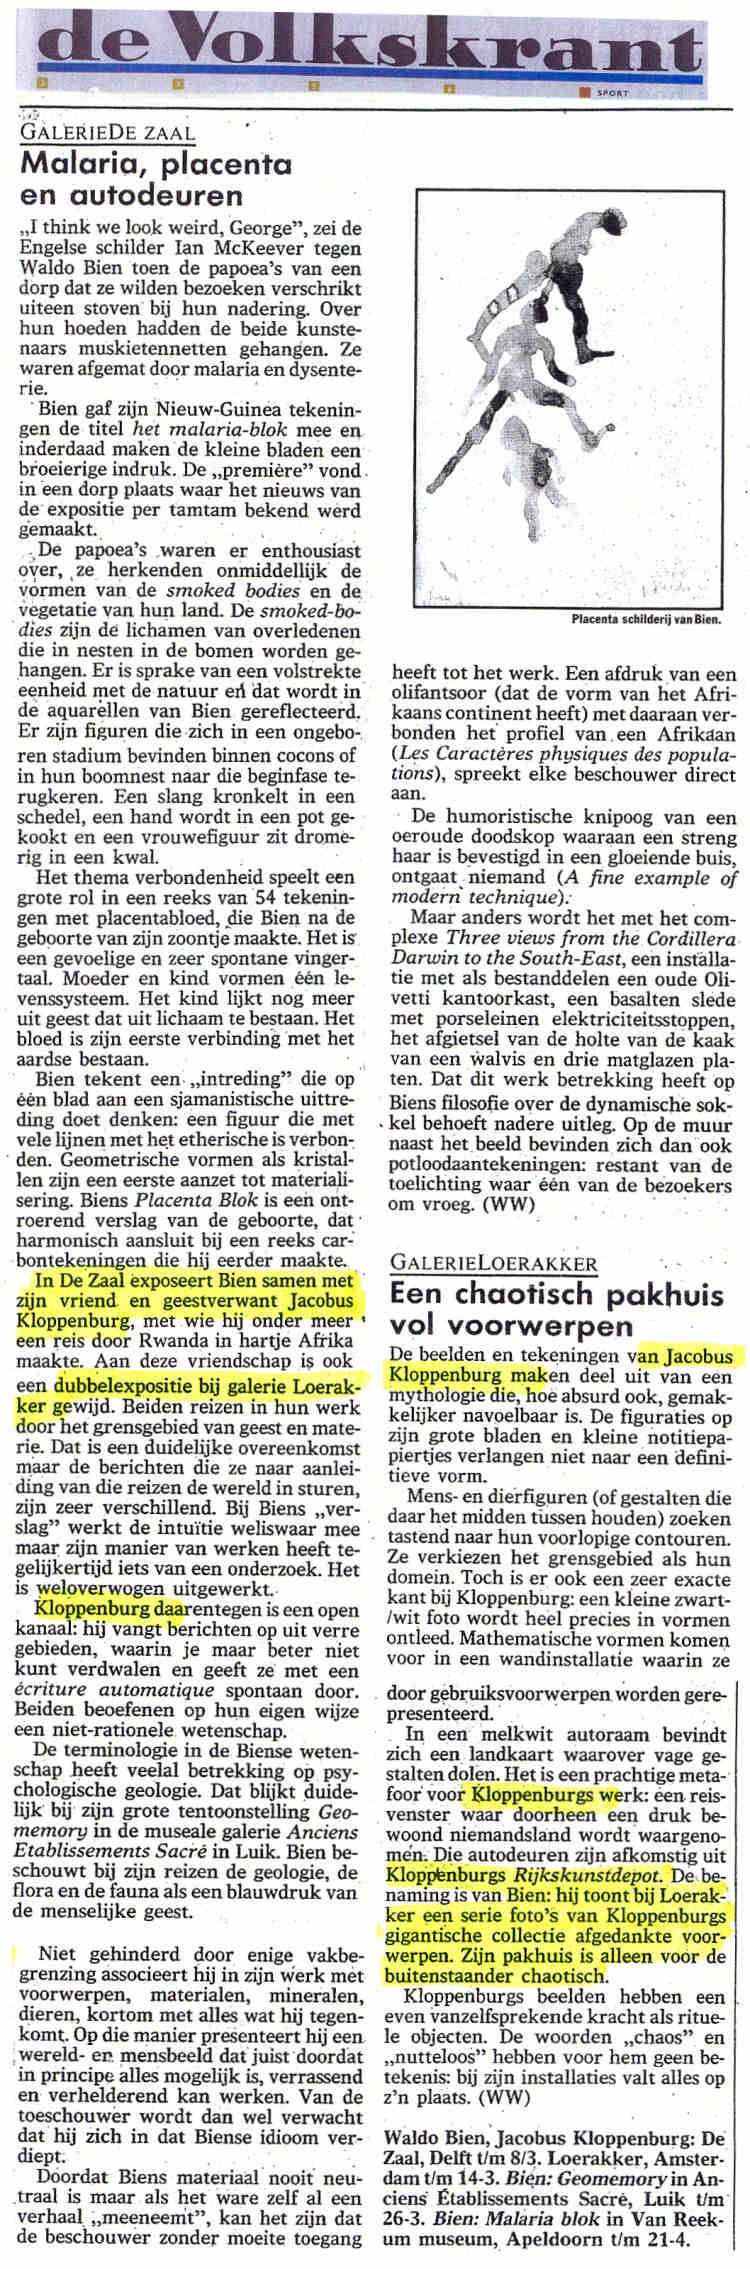 1992 - 20 Februari - Volkskrant